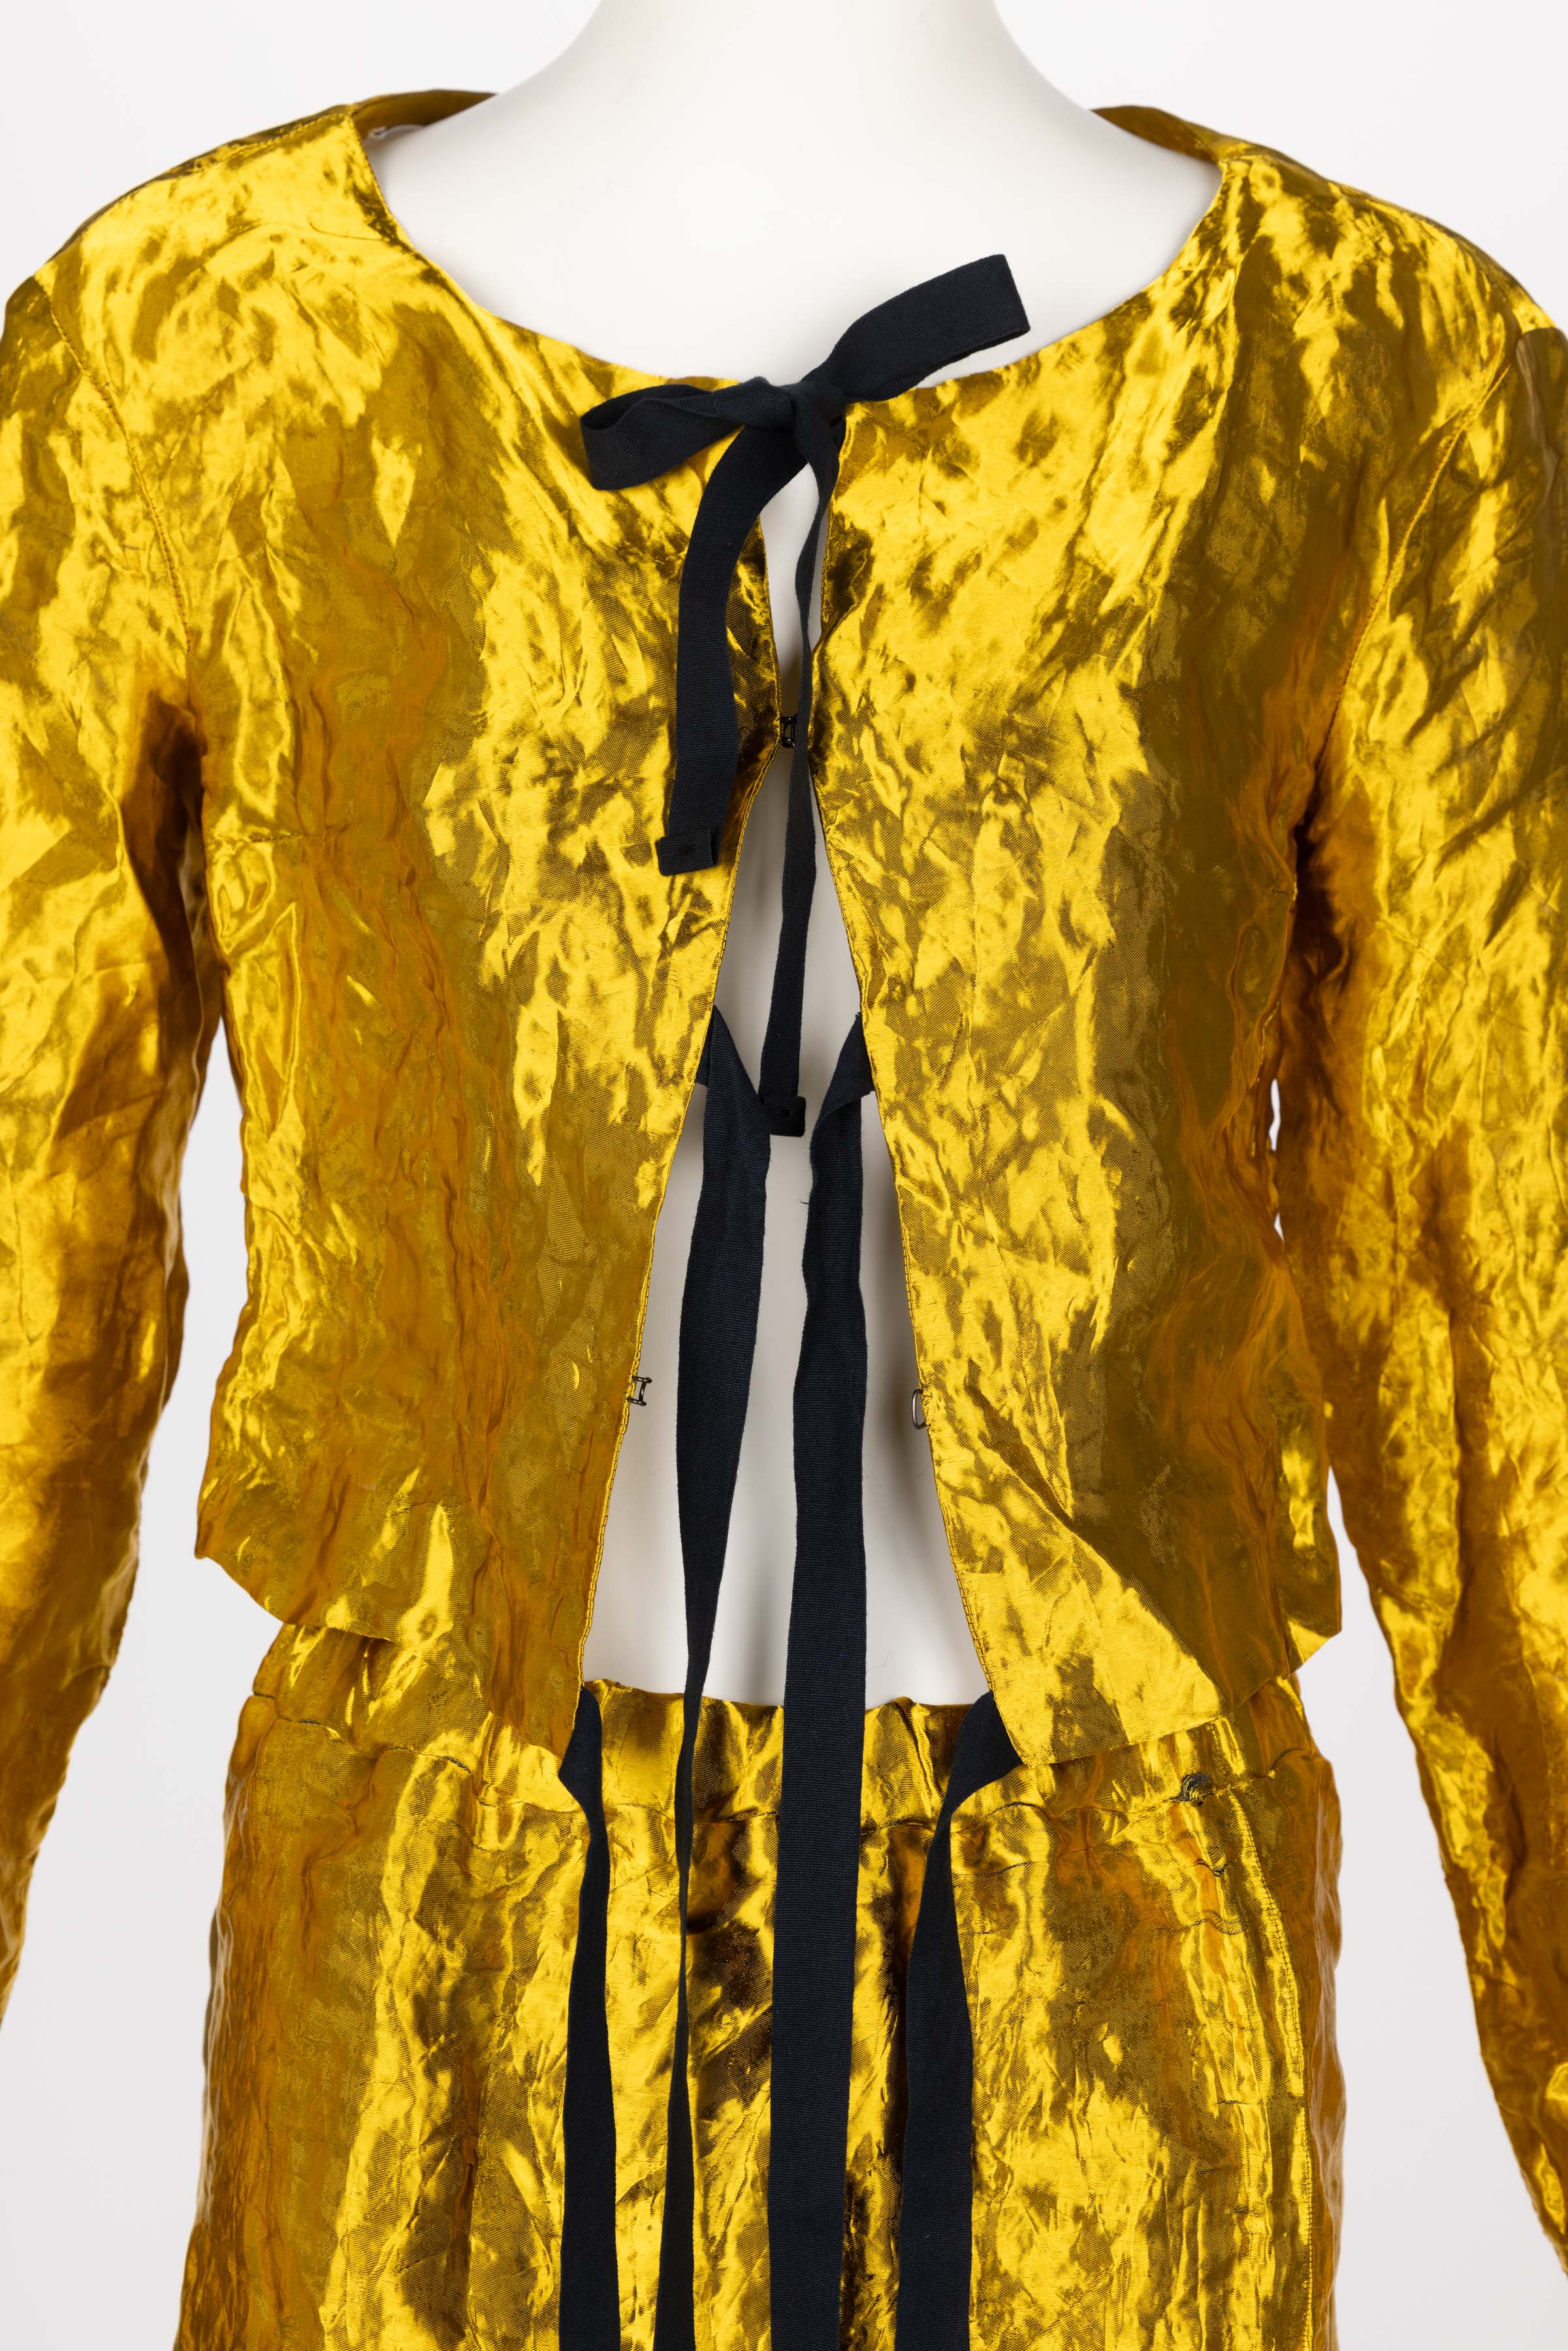 Prada Gold Metal Jacket Top & Skirt Set Spring 2009 3